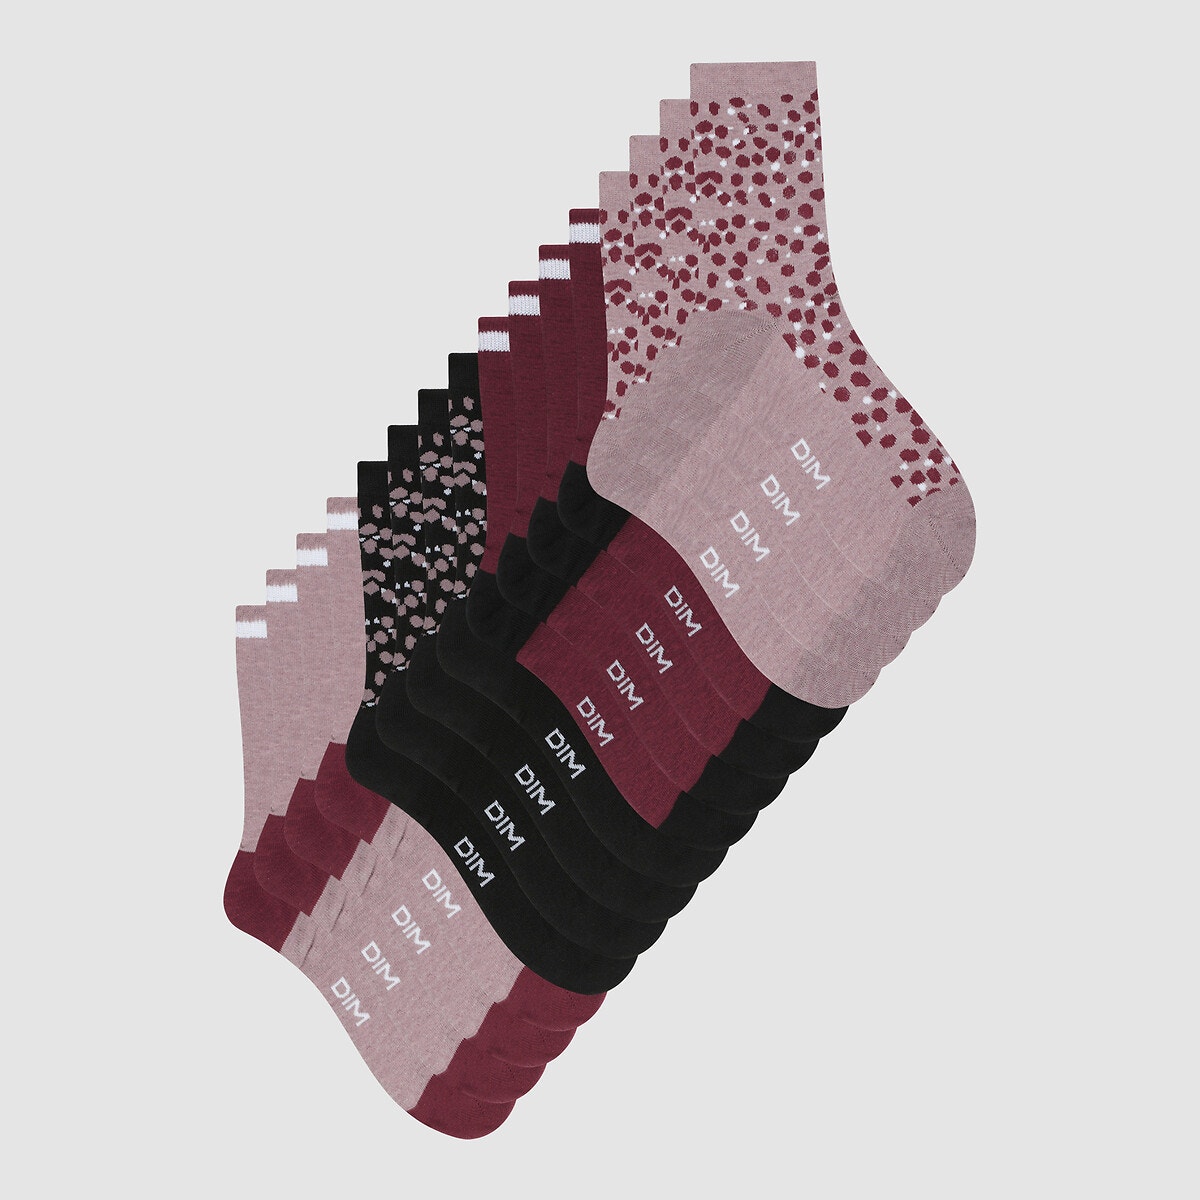 Σετ 8 ζευγάρια κάλτσες, EcoDIM Style